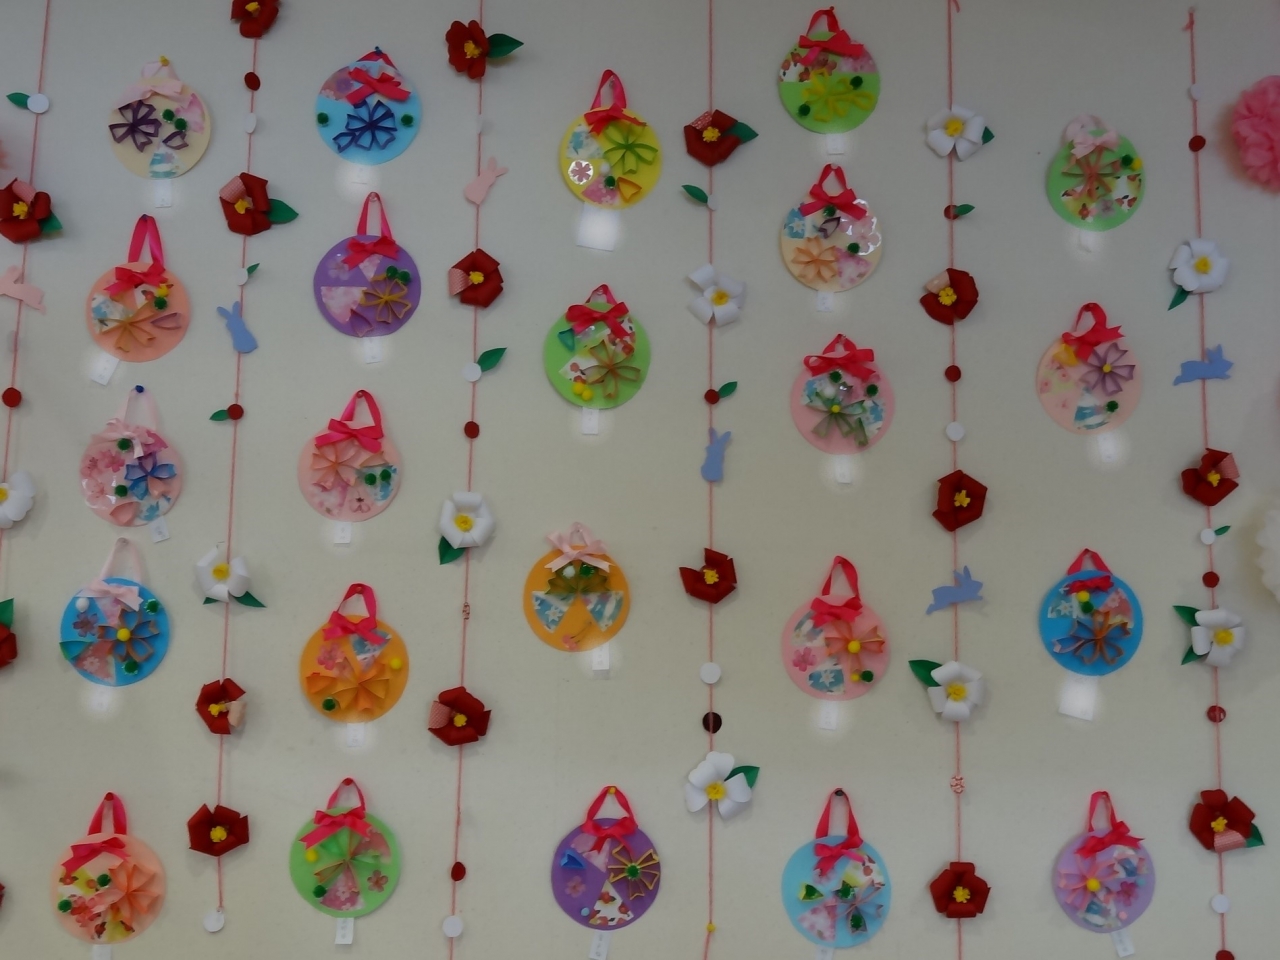 櫻の壁飾り 完成です かざぐるまブログ 高岡市にある高齢者介護施設 かざぐるま